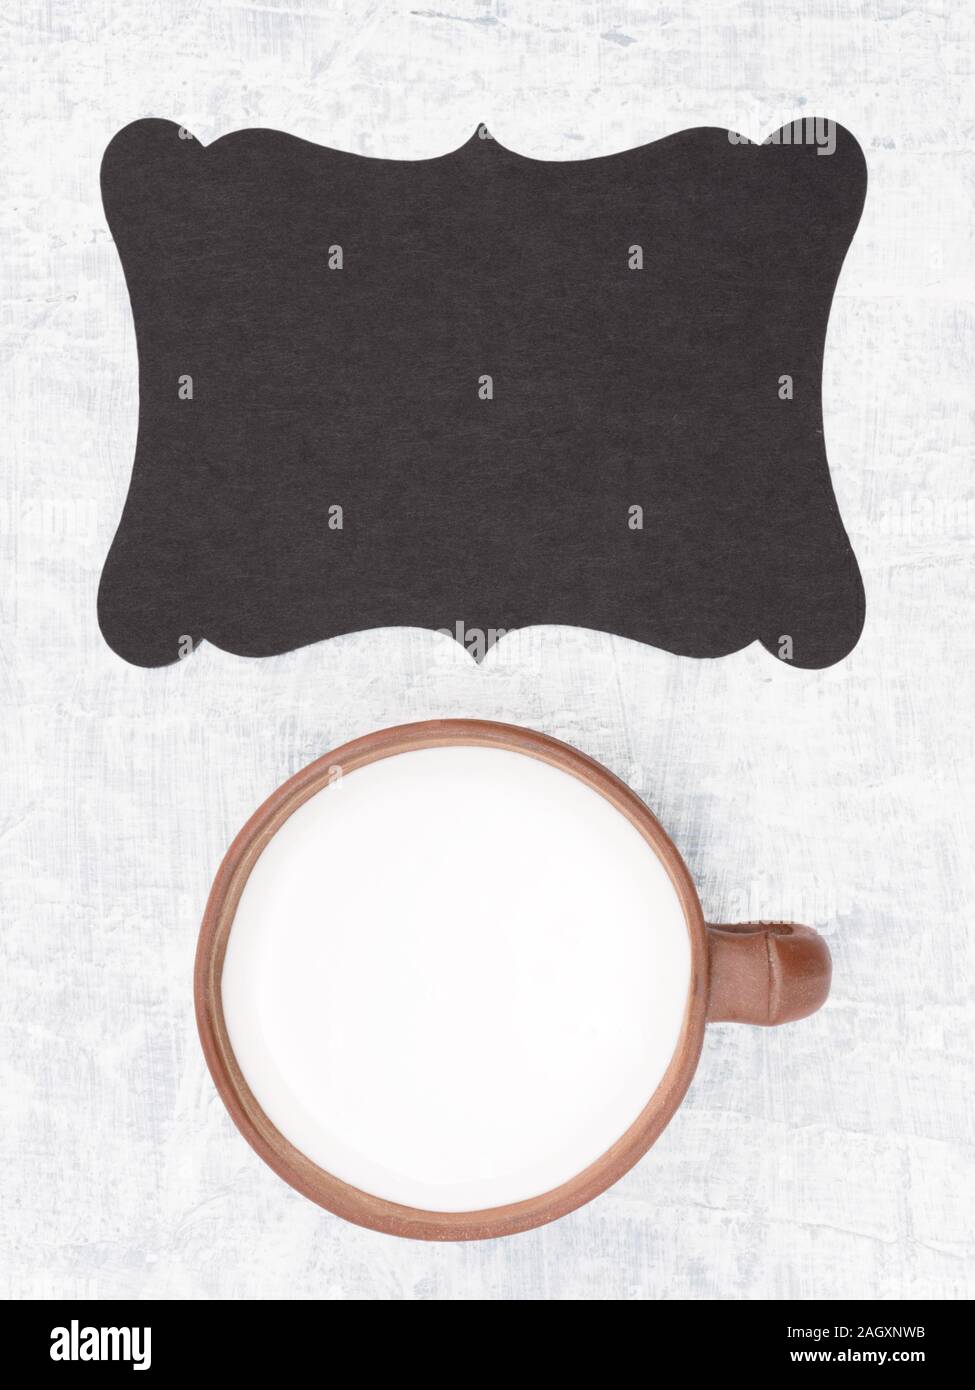 Le yogourt dans brown, tasse en céramique sur une plaque de fond en béton blanc with copy space Banque D'Images